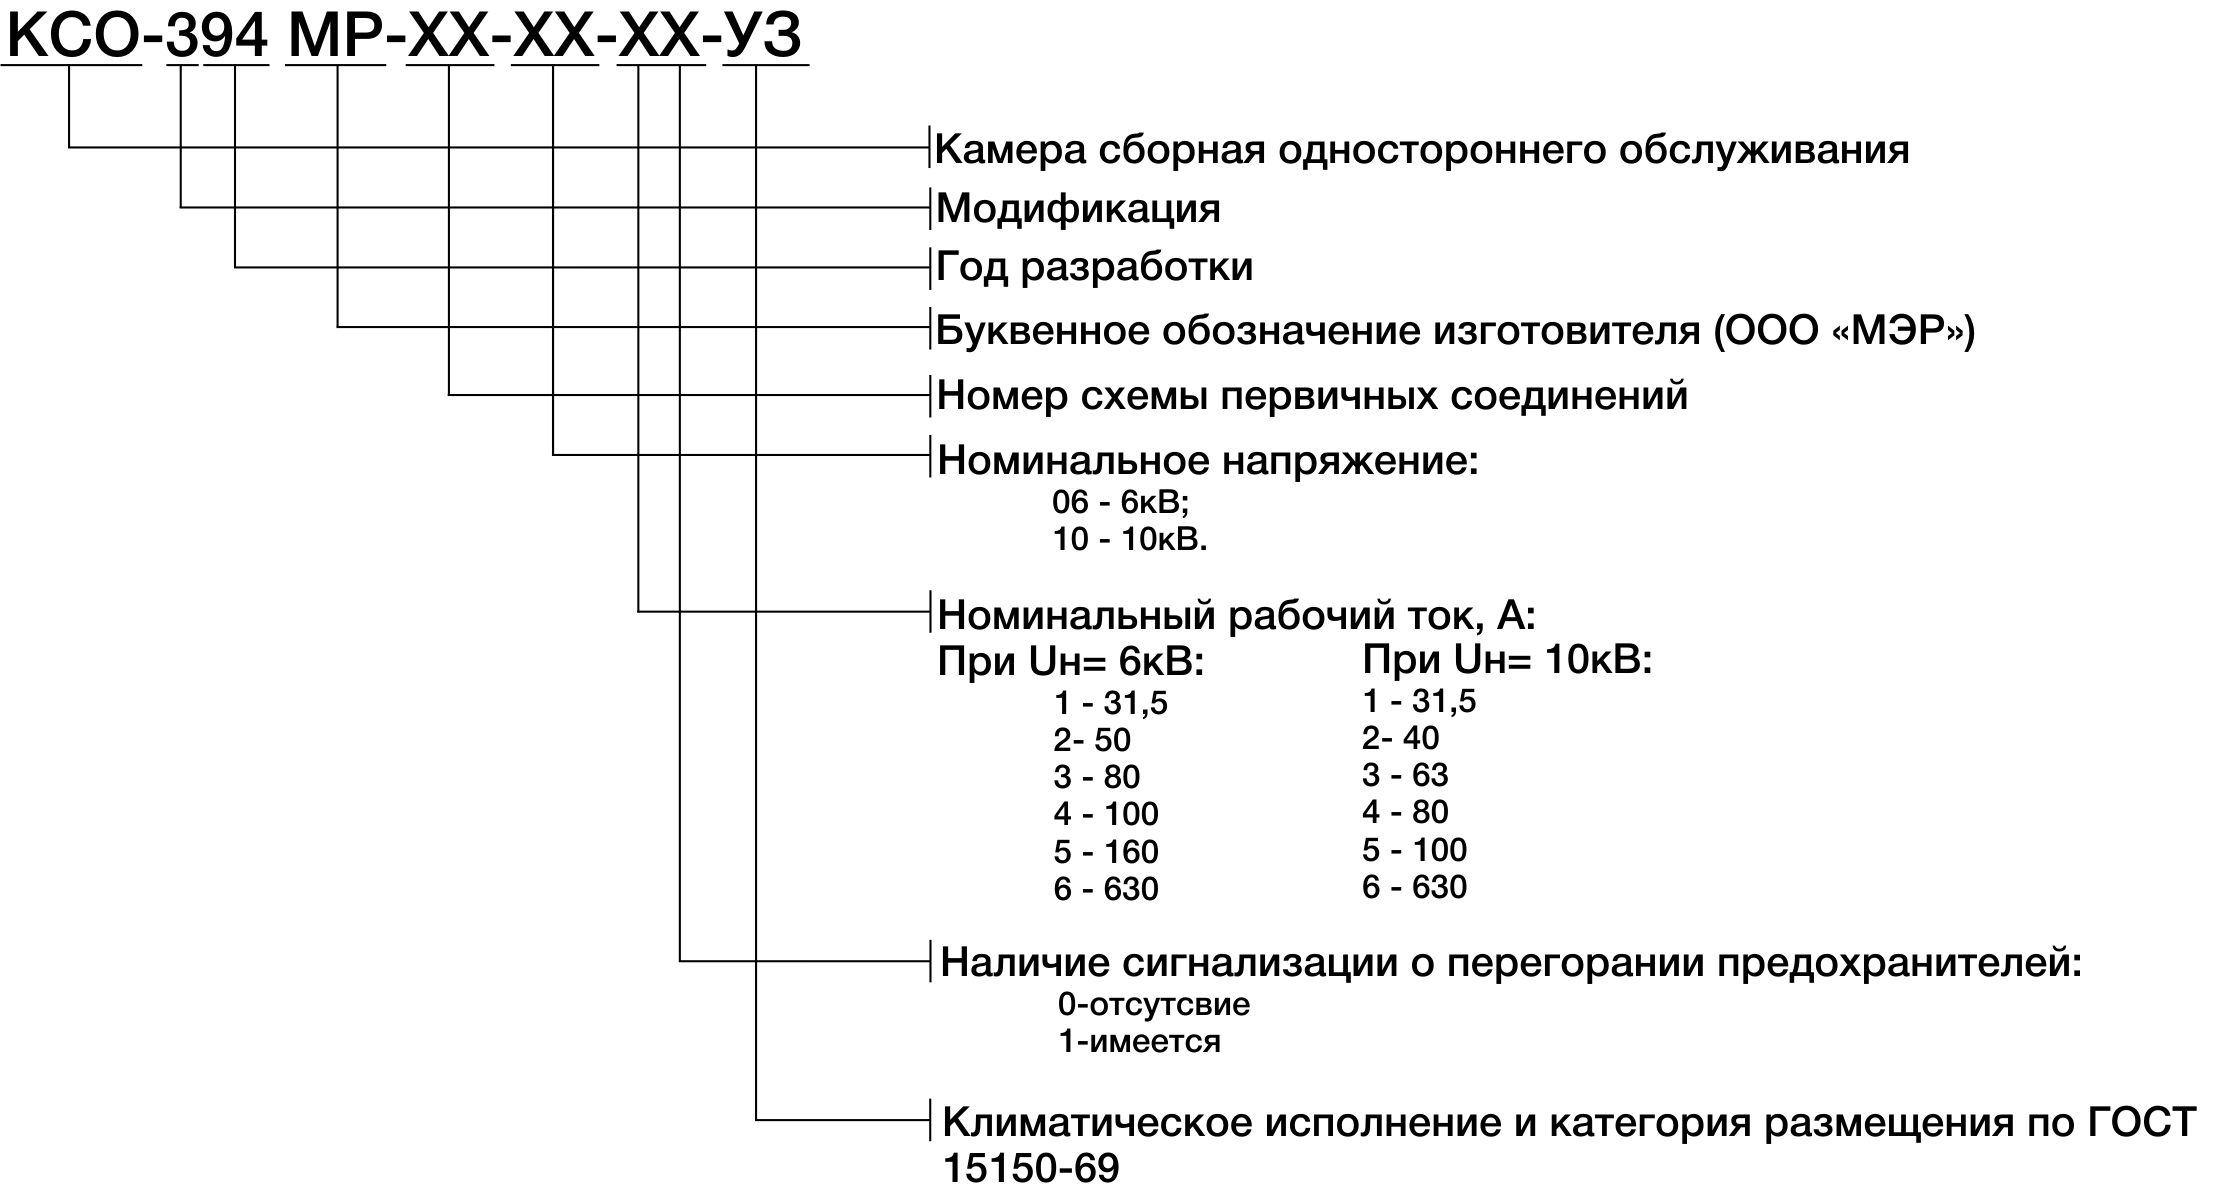 Структура условного обозначения КСО-394МР